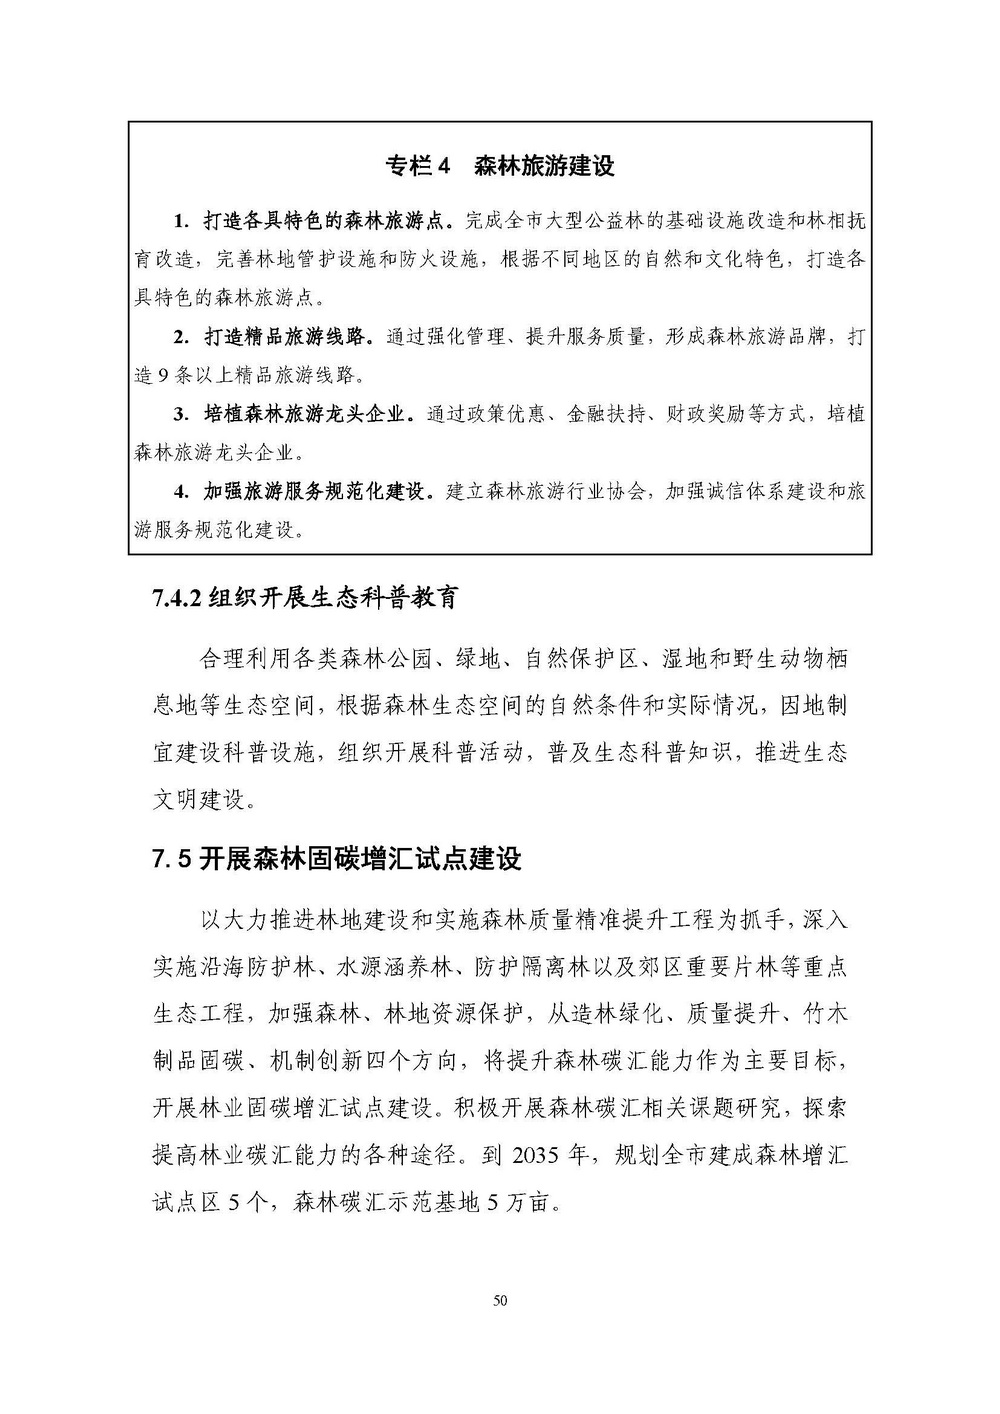 上海市森林和林地保护利用规划文本 公开稿 附图_页面_53.jpg